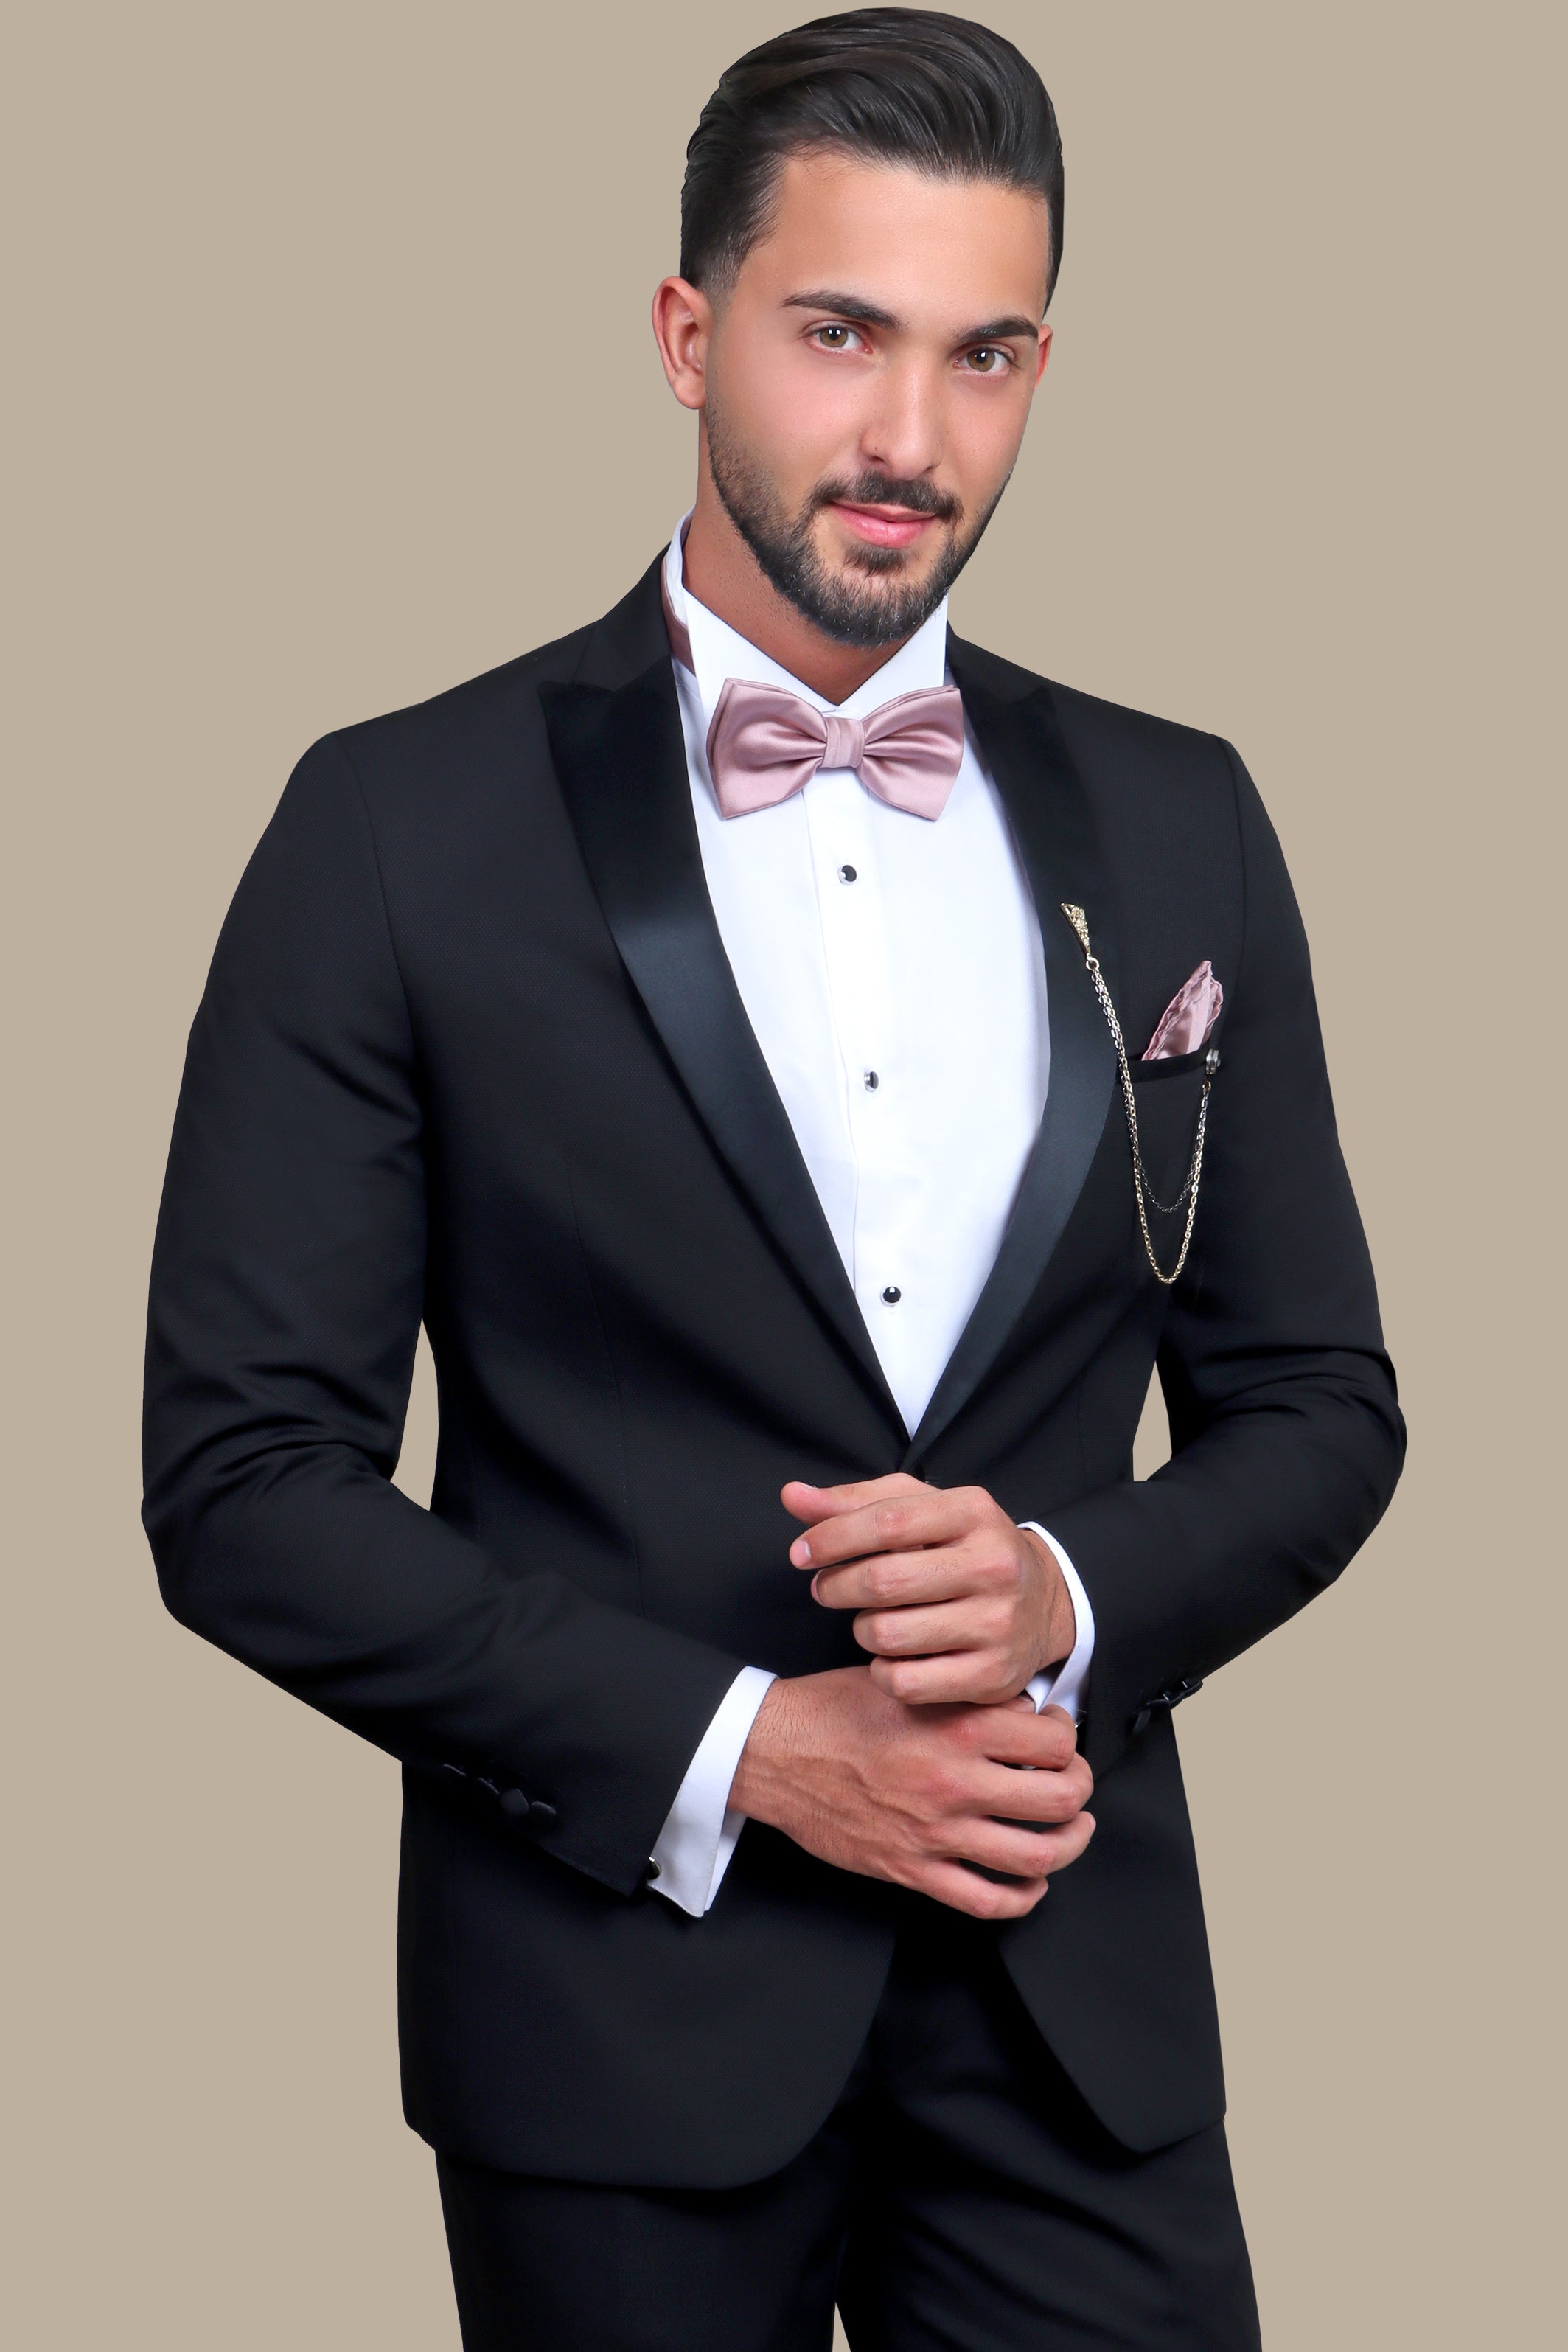 Men's Suits and Suit Separates | Dillard's